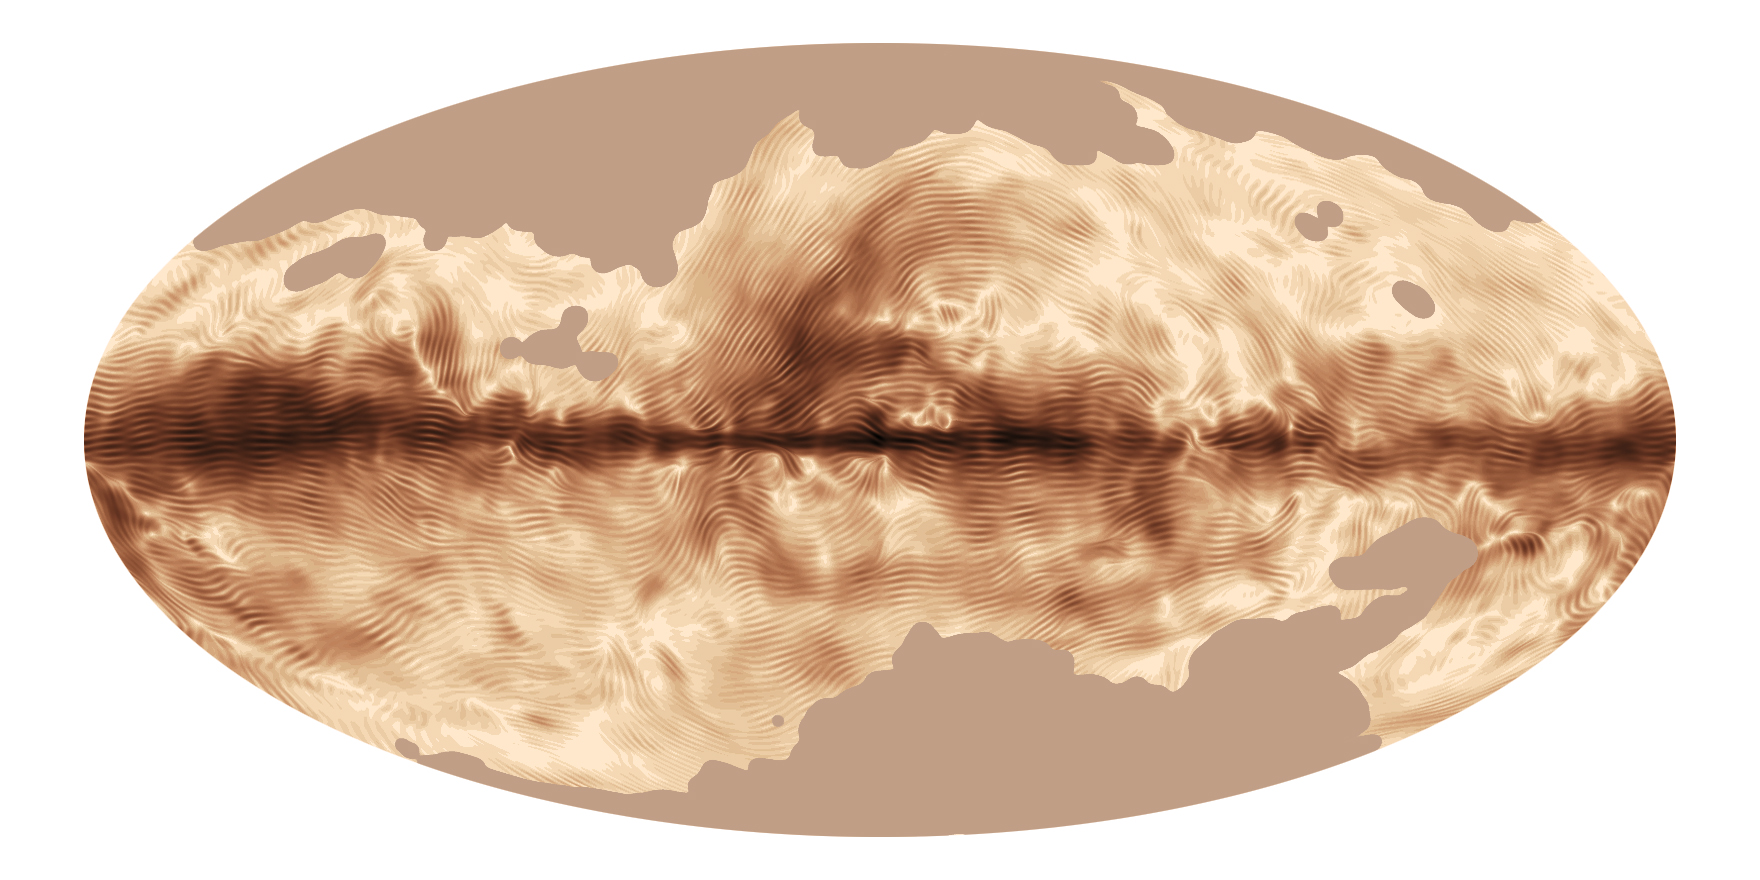 La nuova mappa 3D della via Lattea vi aiuterà a risolvere i vecchi misteri del cosmo